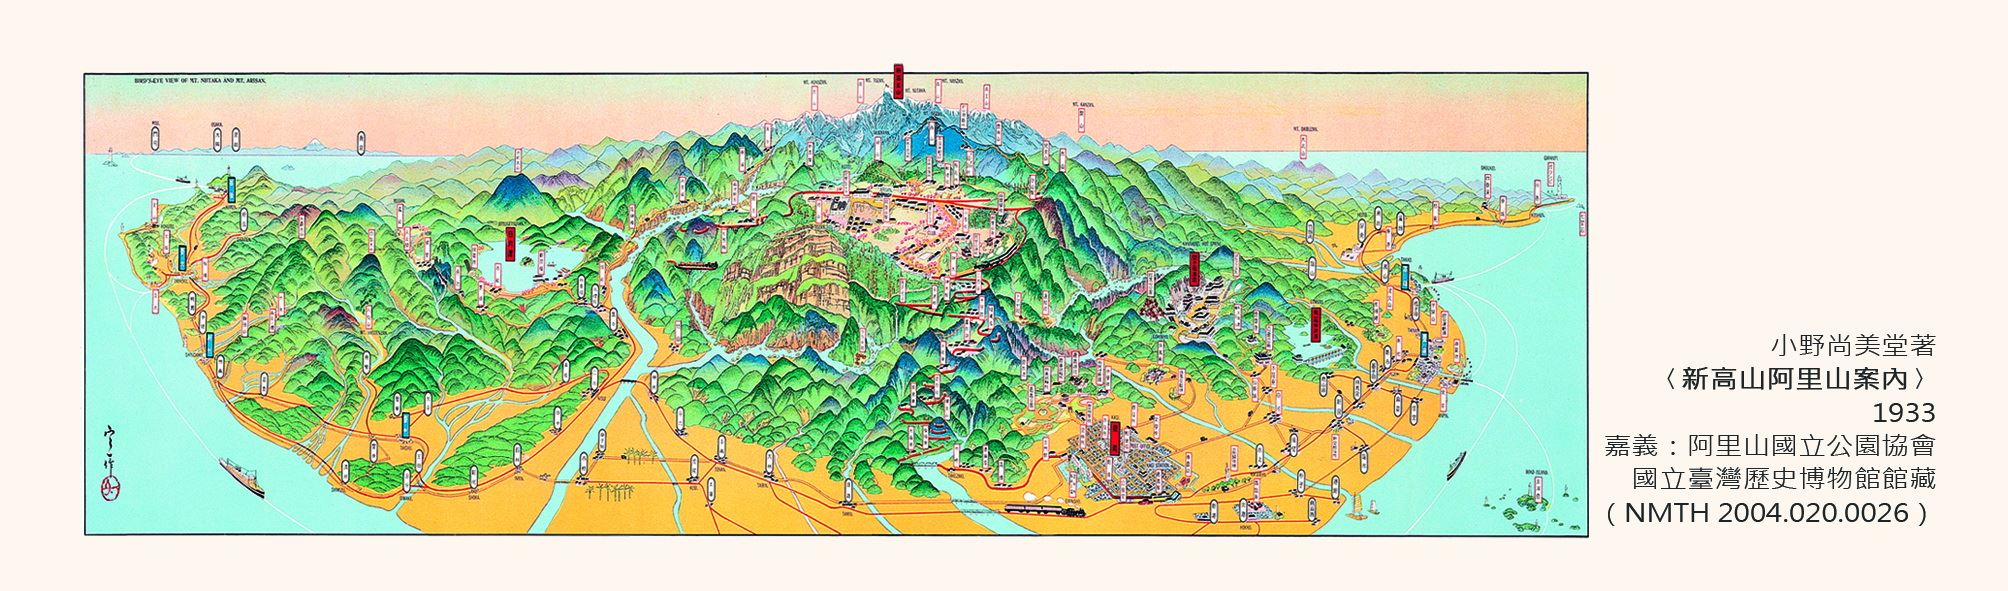 地圖書籤3(1933年-新高山阿里山)-正